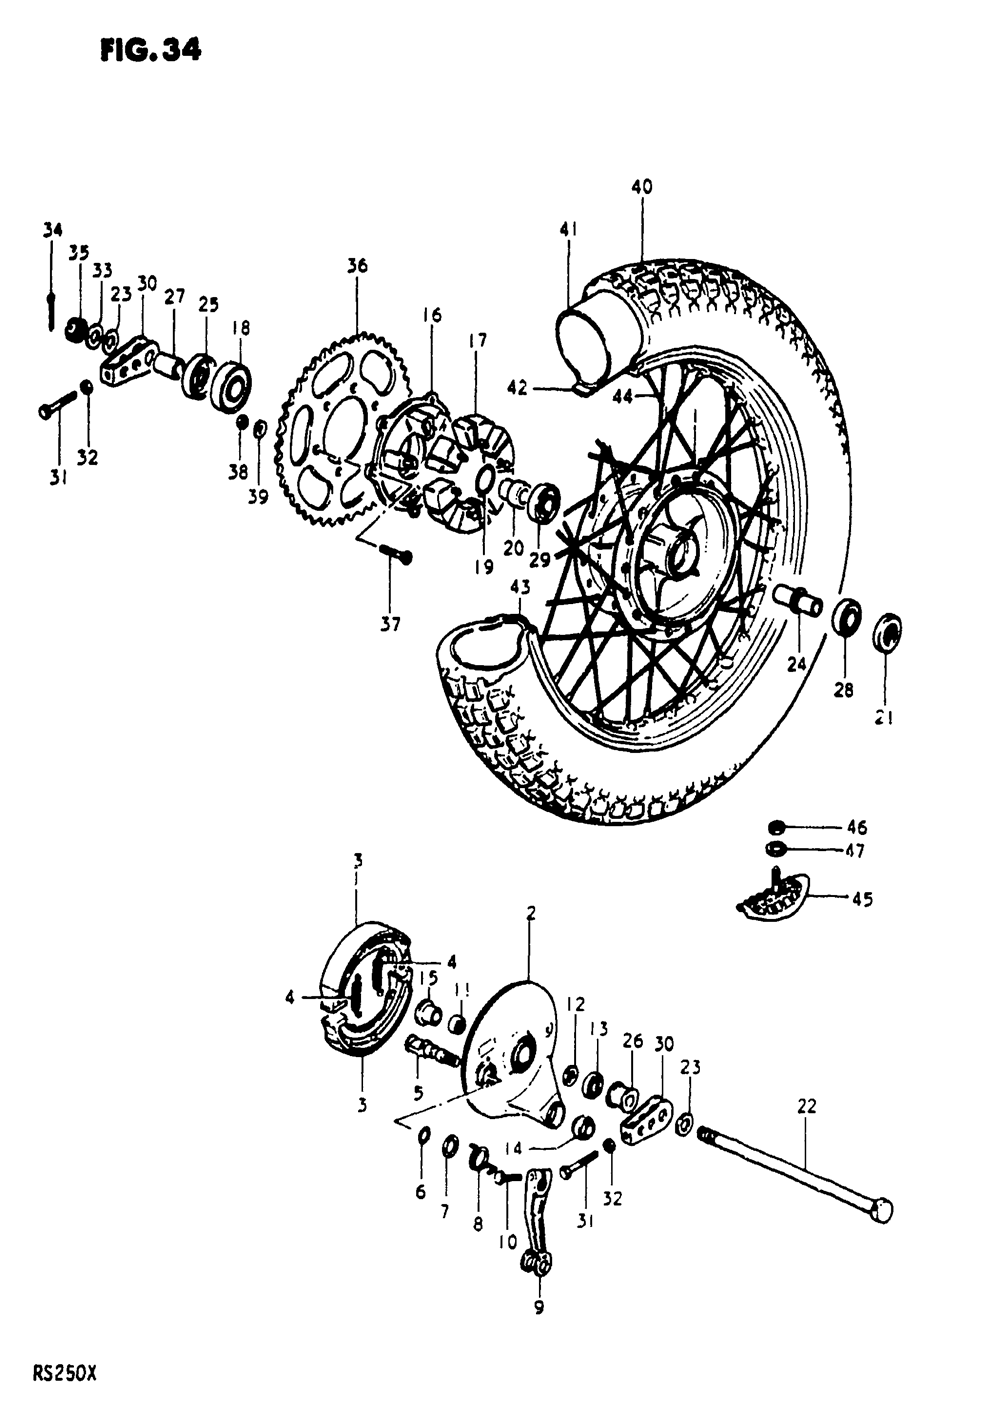 Rear wheel